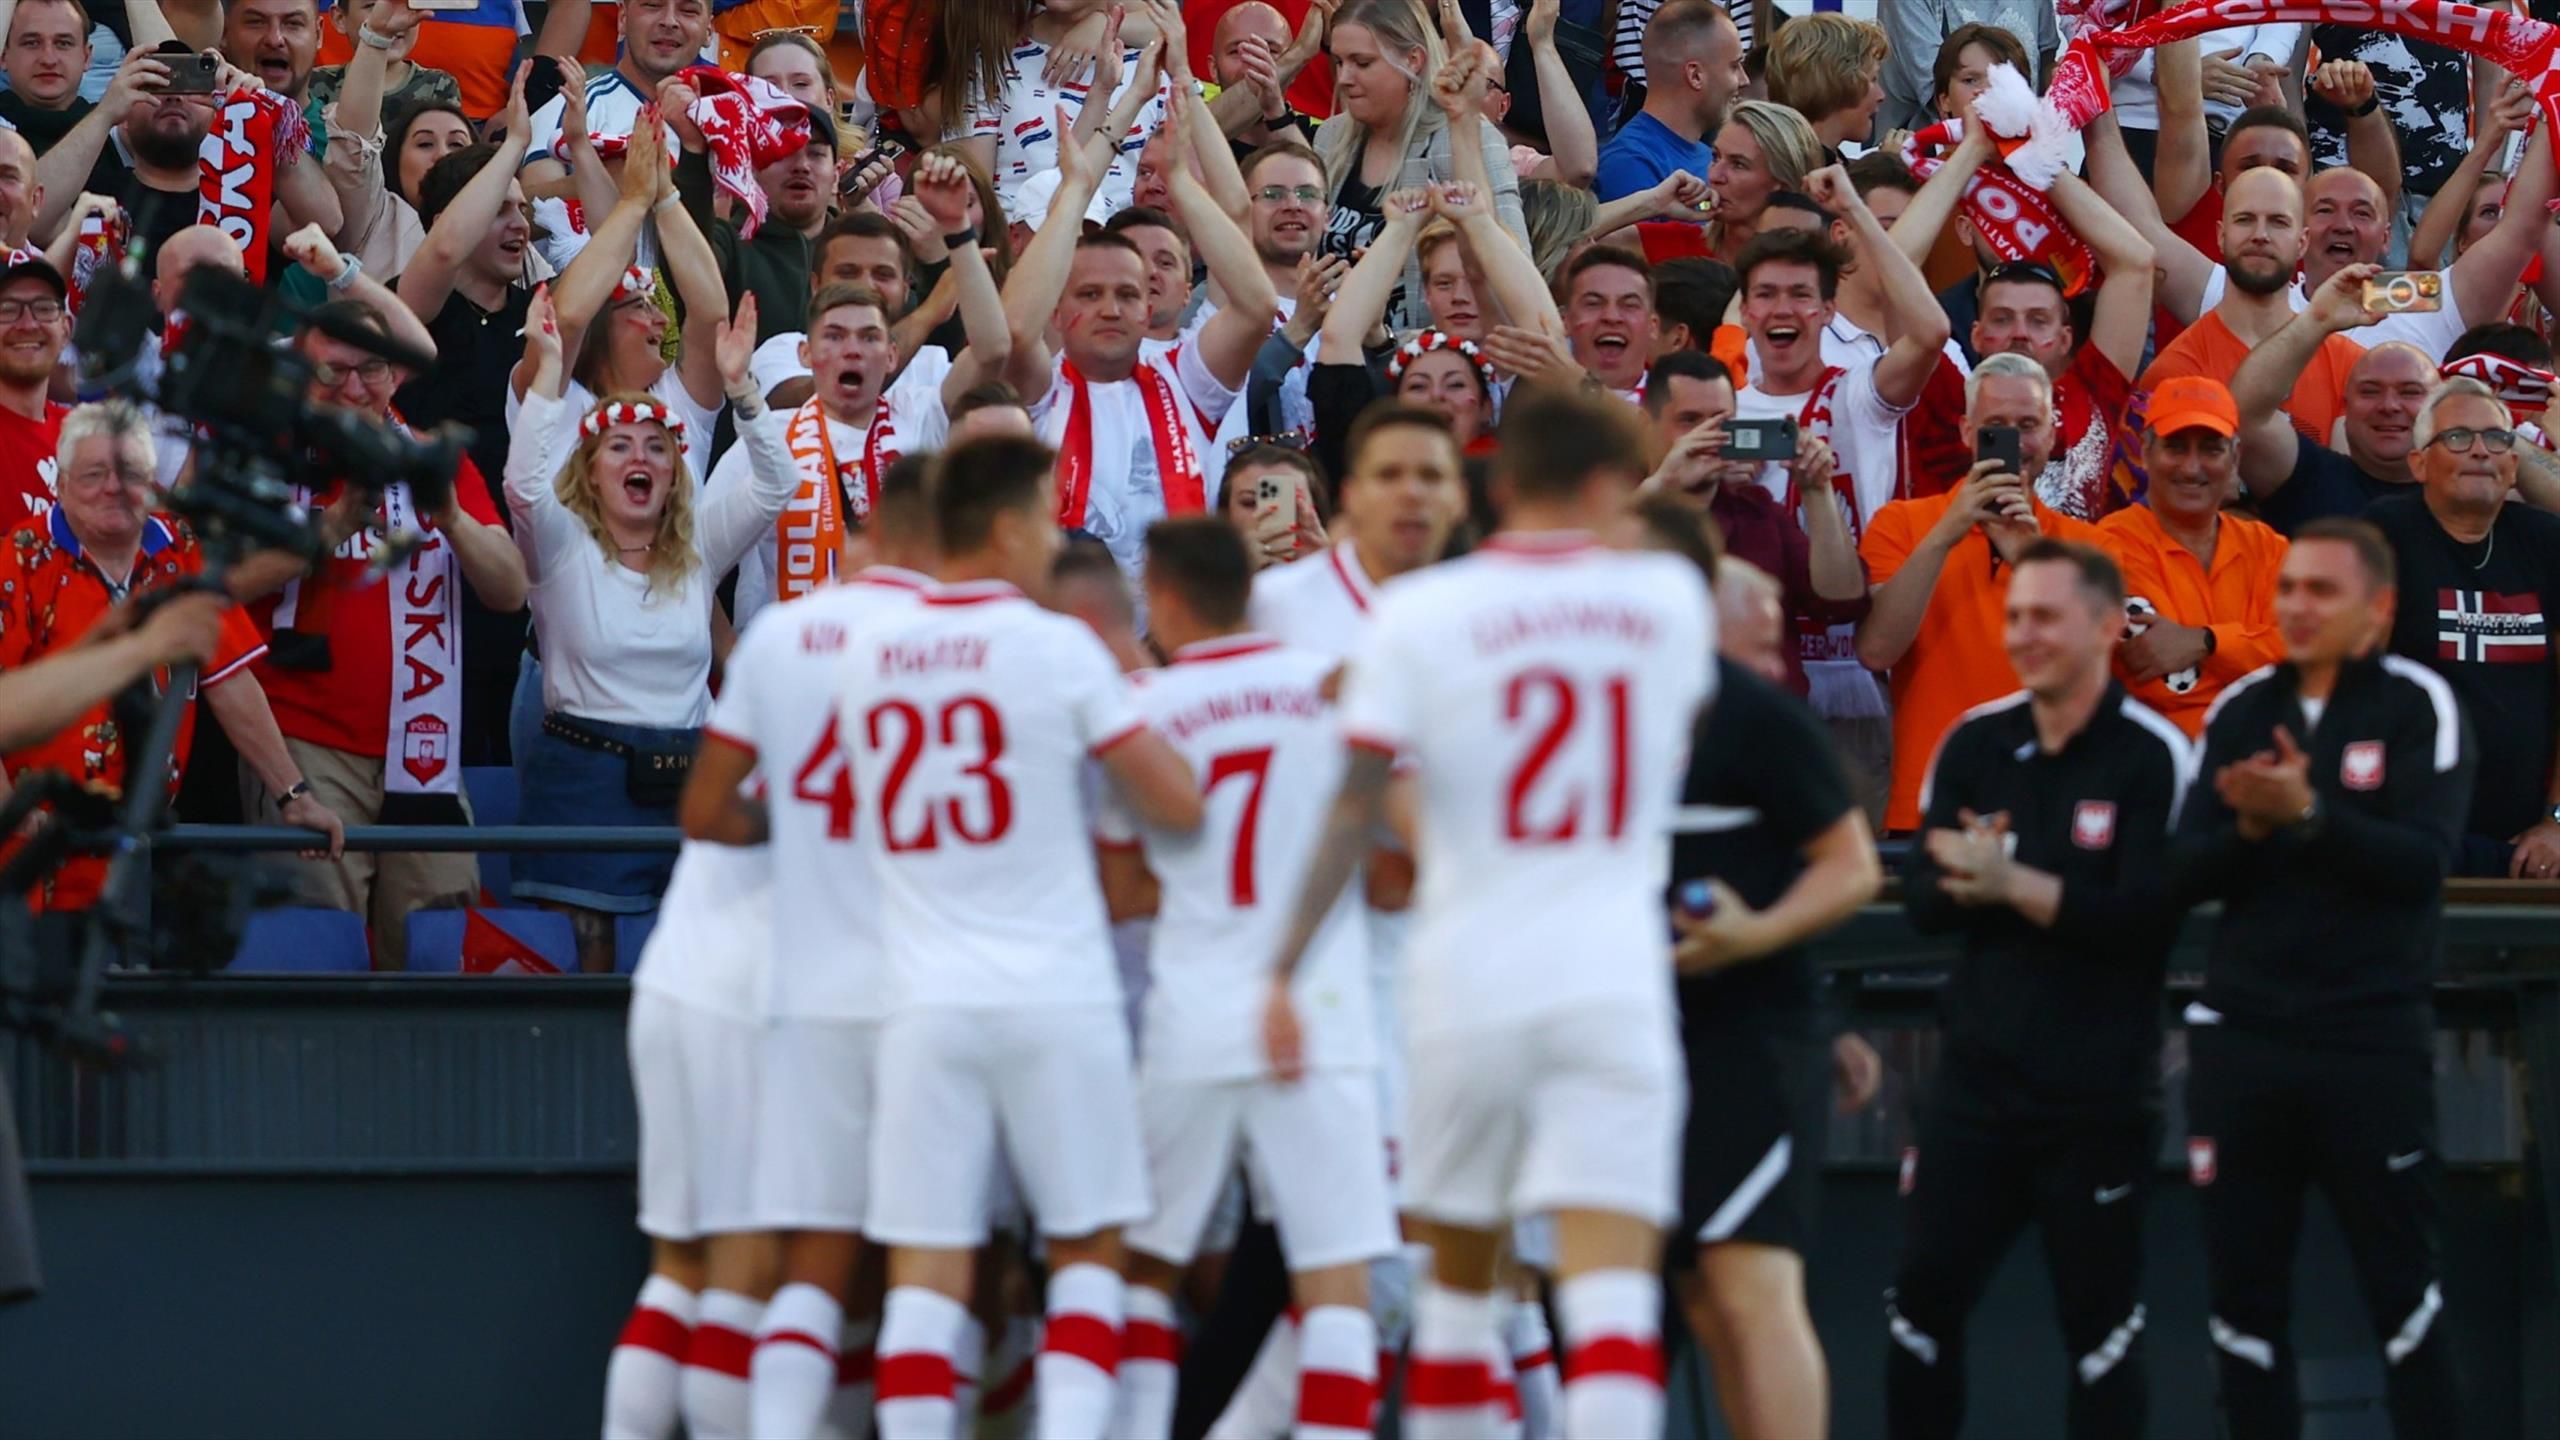 Holandia Polska W Lidze Narodów Prezes Pzpn Dziękuje Polskim Kibicom Piłka Nożna Eurosport 